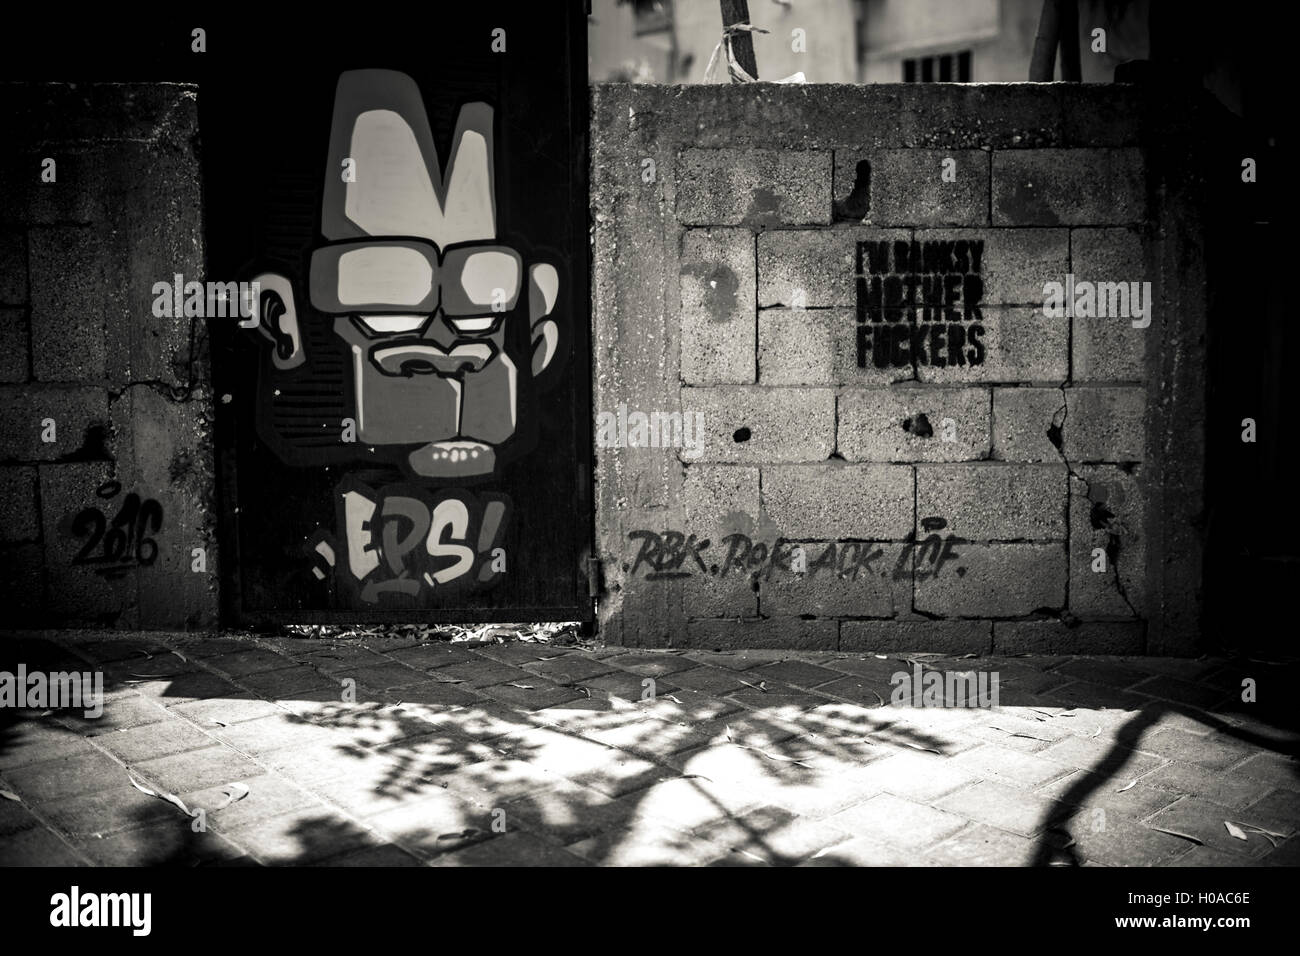 Graffitis a Beirut - 10/06/2016 - Libano / Beirut - Mar Mikhail, Beirut, giugno 2016. Iconico 'Cesar' carattere da EPS. Questo sportello è stato dipinto dopo il proprietario del parcheggio lo ha chiesto. - Bilal Tarabey / Le Pictorium Foto Stock